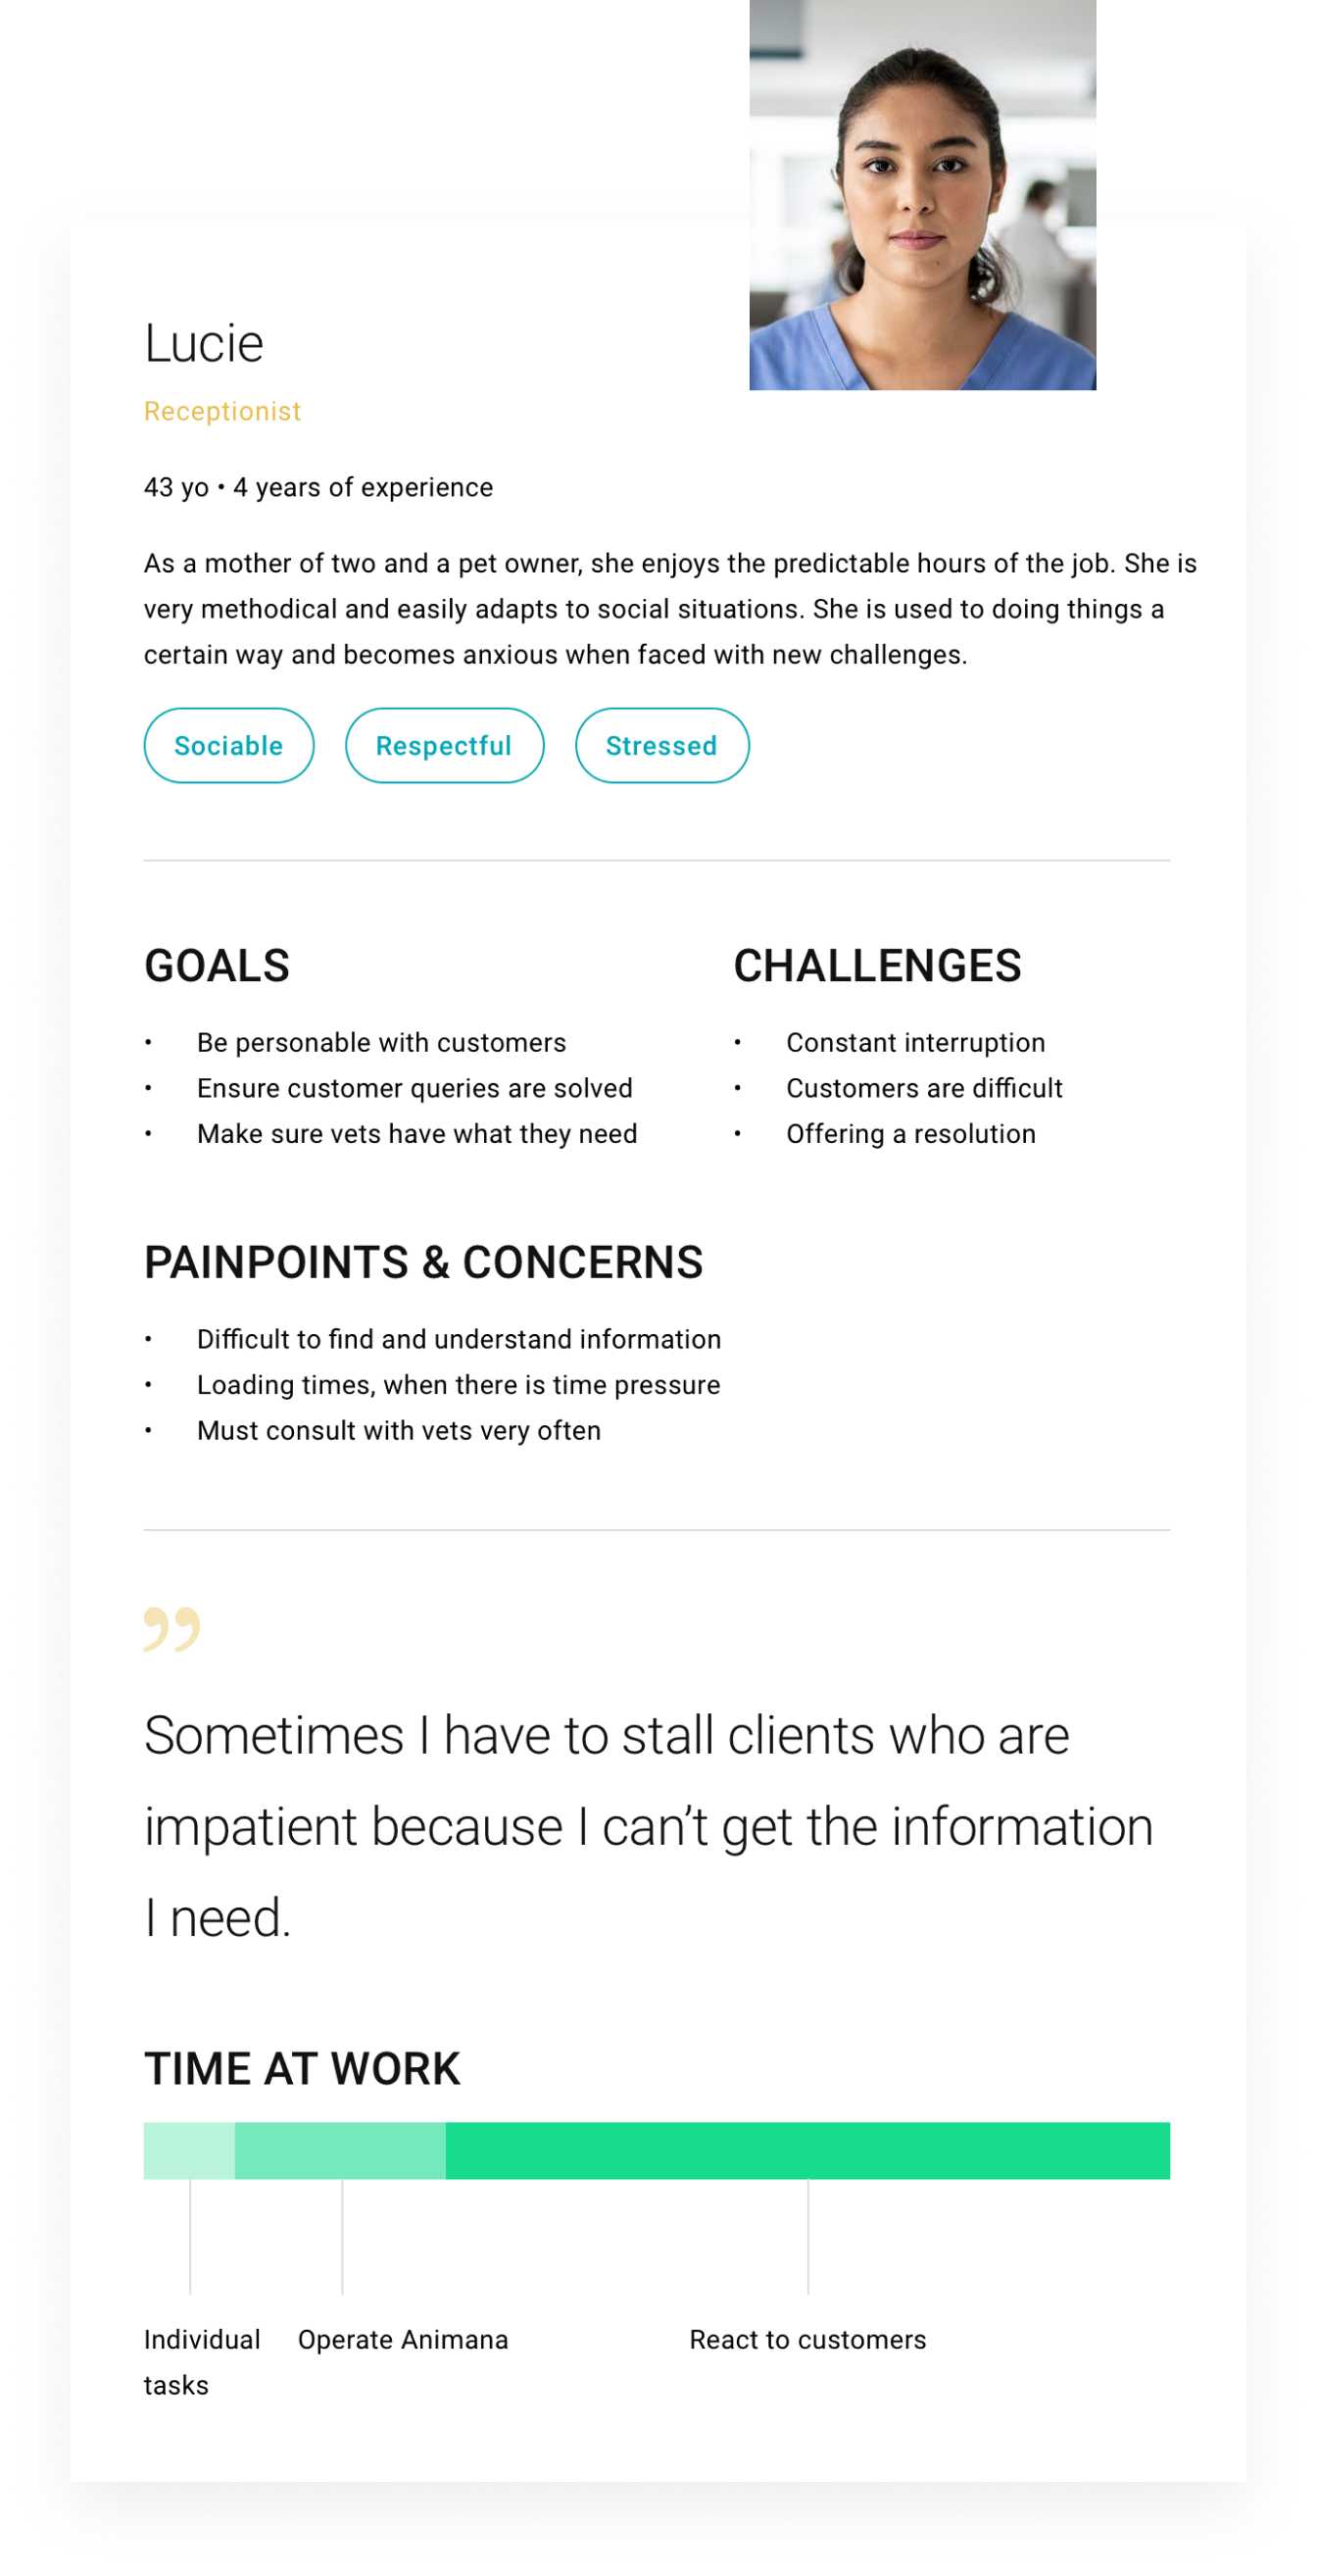 Käyttäjäpersoonakaavio tavoitteineen, haasteineen ja huolenaiheineen